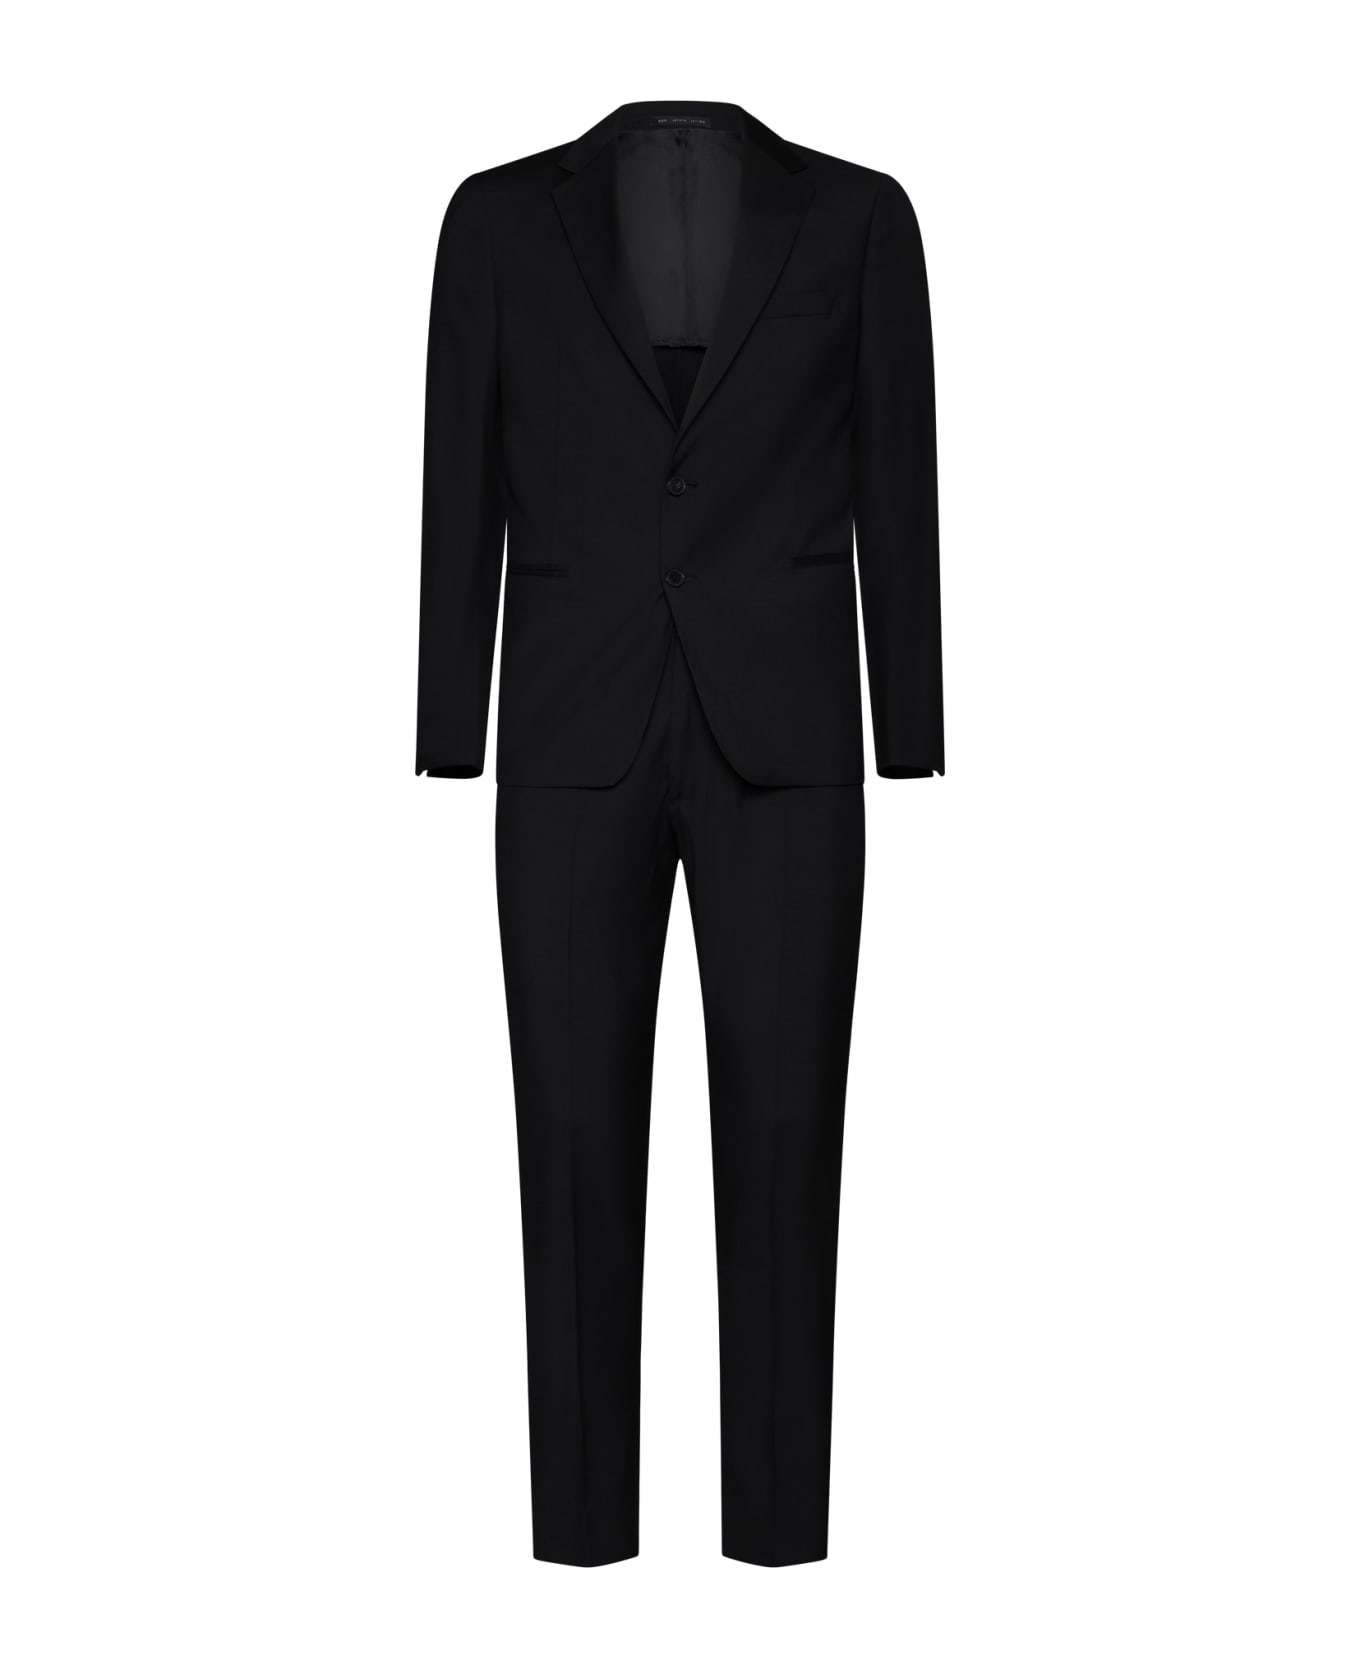 Low Brand Suit - Jet black スーツ